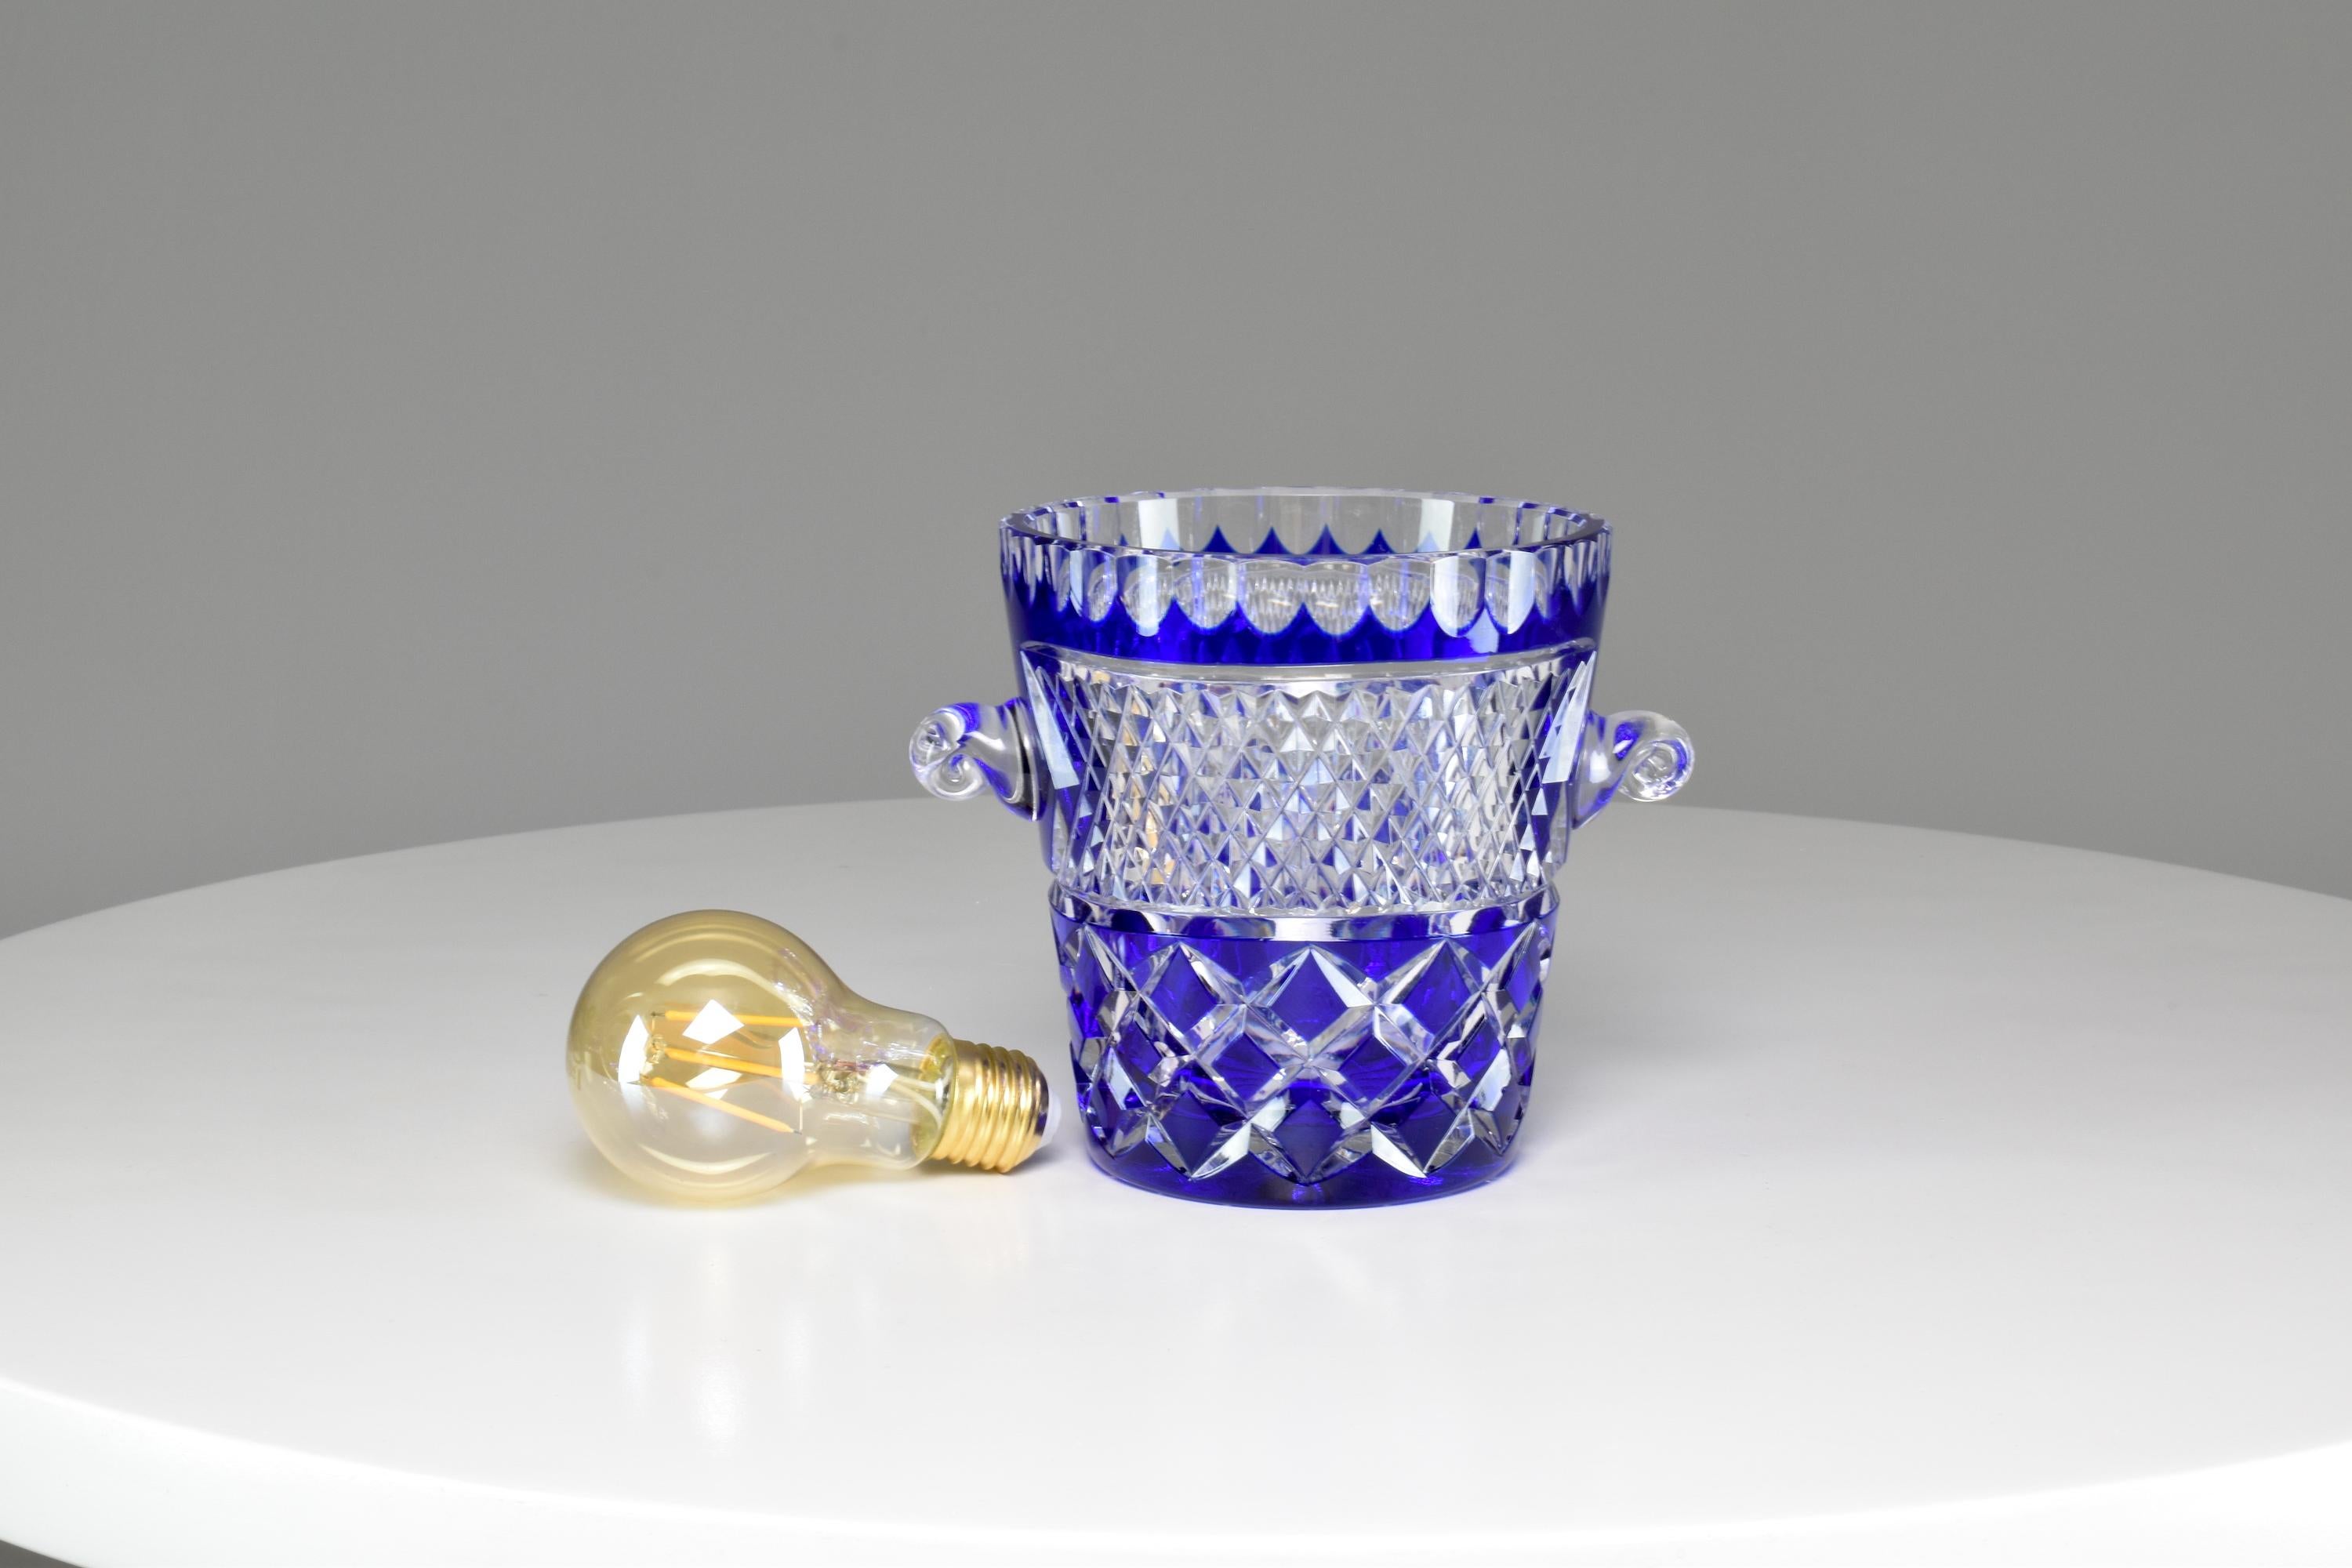 Superbe seau à glace ou à champagne bleu foncé de la fin du 20ème siècle par Crystal de Bohême. Cette pièce en cristal taillé est accompagnée d'une cuillère à glaçons et est brillamment sculptée à la main. 
-------

Nous sommes un espace